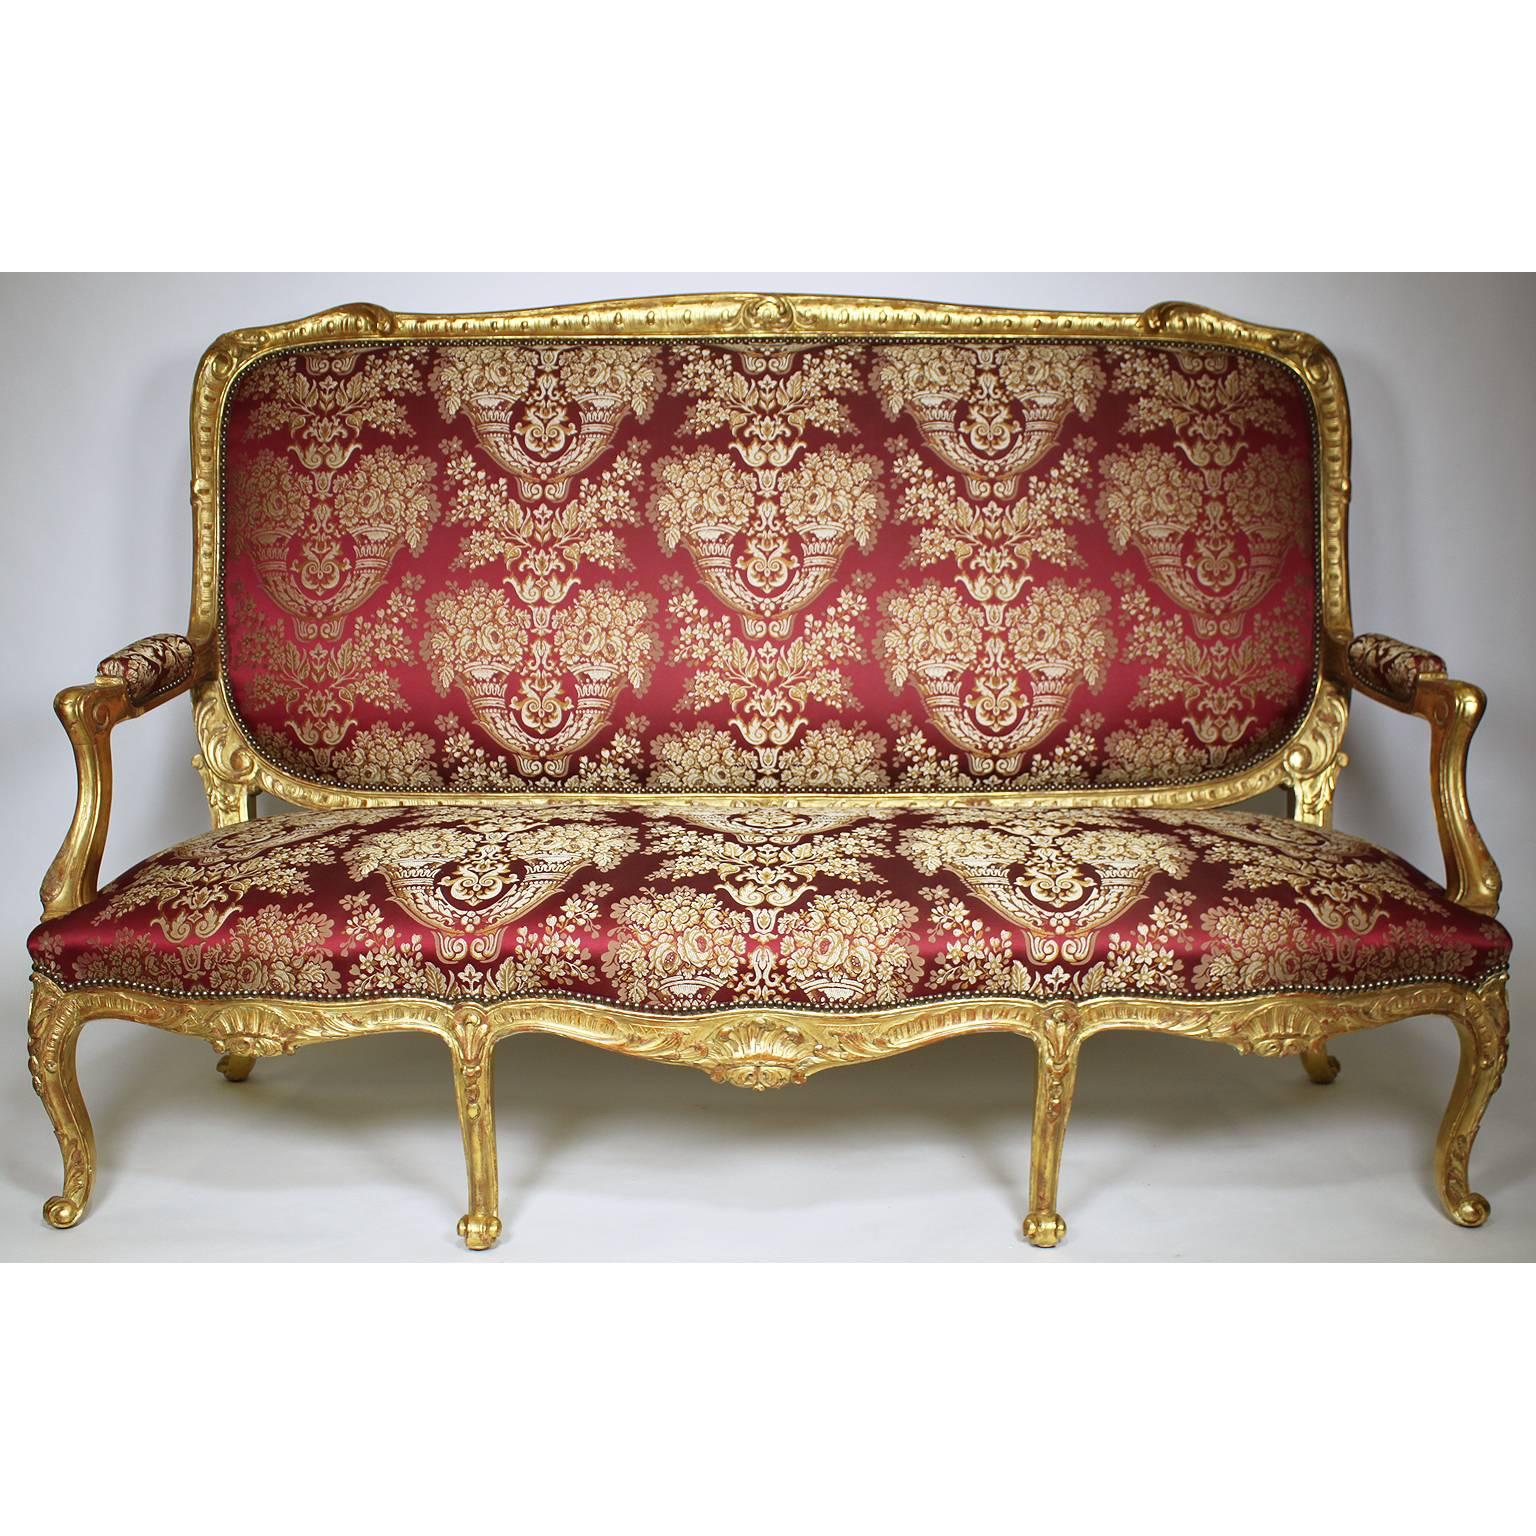 Ein sehr feines und palastartiges französisches Salonmöbel im Louis XV-Stil aus vergoldetem Holz aus dem 19. Jahrhundert, bestehend aus einem Canapé und vier Fauteuils à la Reine (Sessel), alle von großer Größe, mit hohen Rückenlehnen und kürzlich